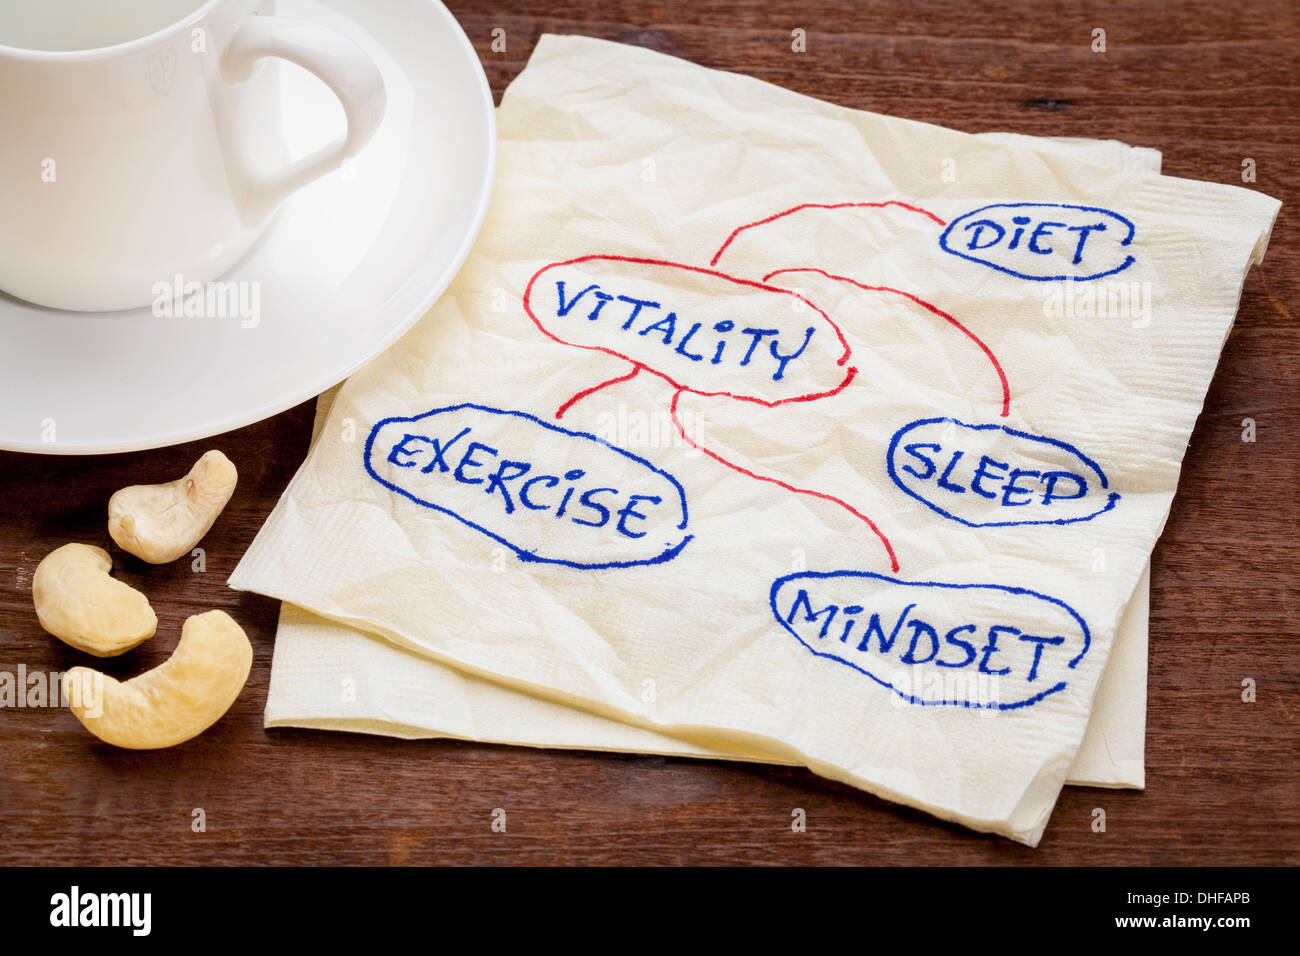 La dieta, dormire, esercizio e di mentalità - concetto di vitalità - uno schizzo su un tovagliolo con tazza di caffè Foto Stock